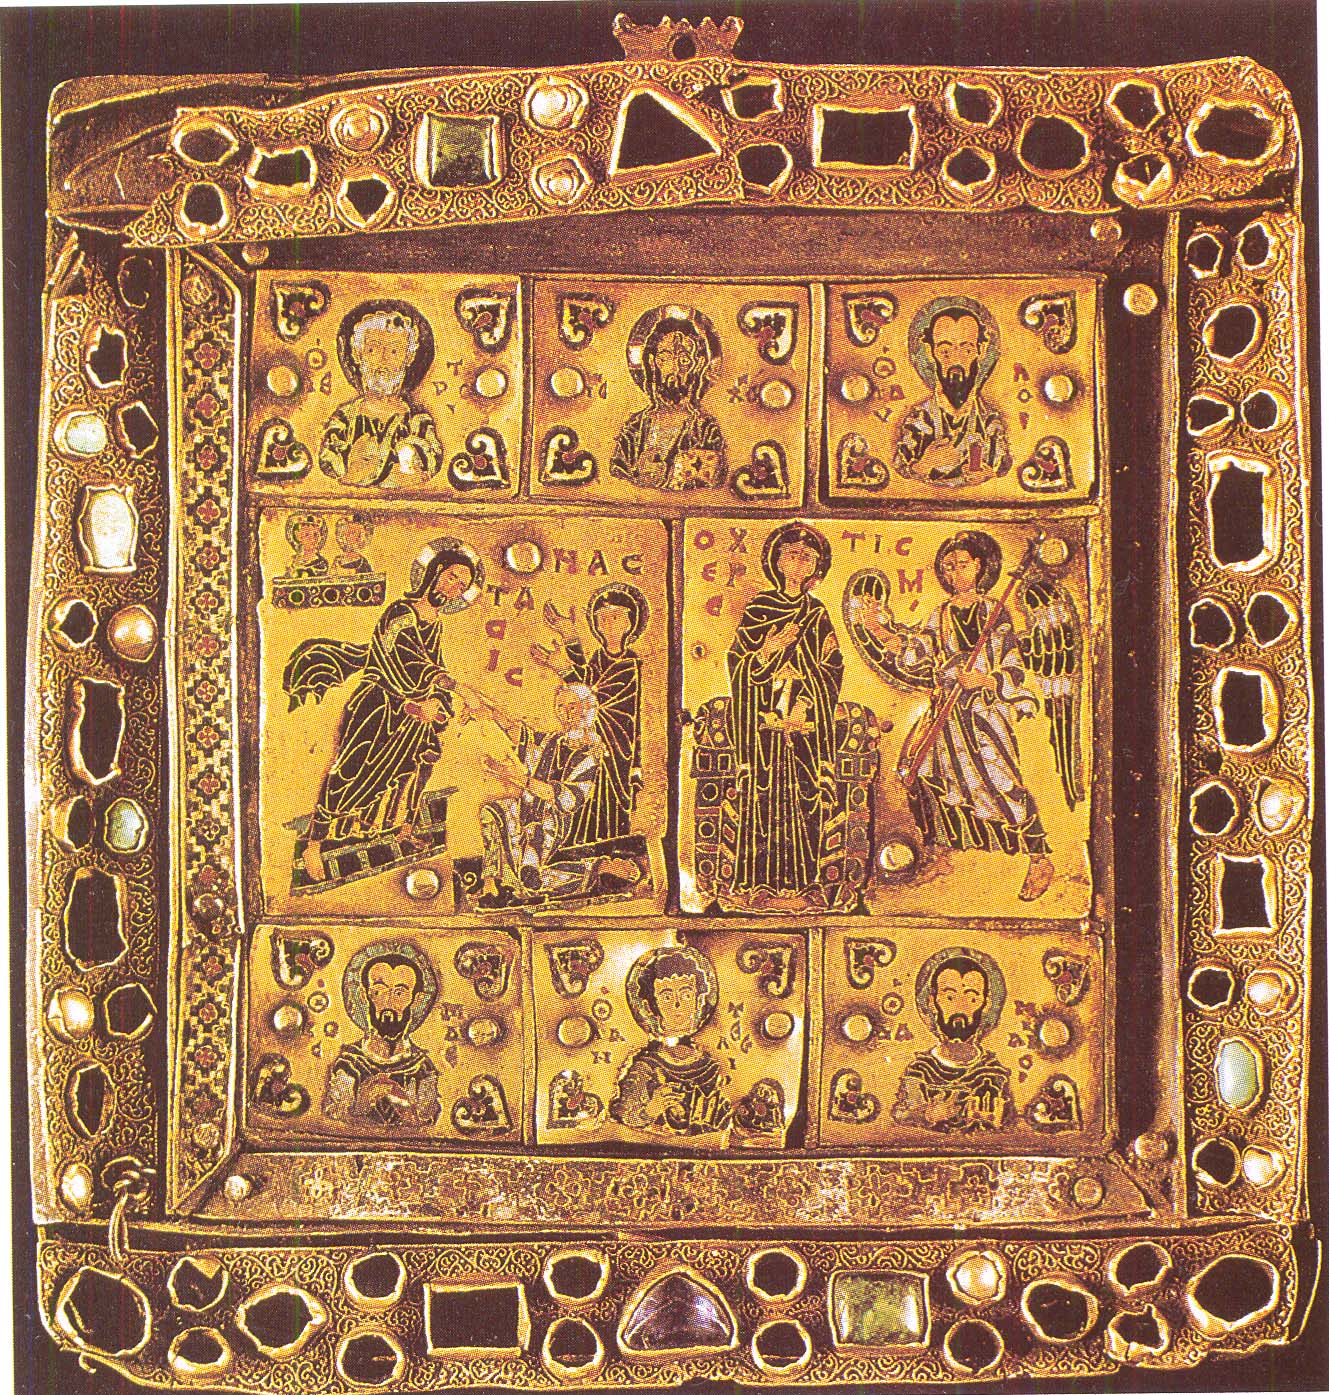 Εσμαλτωμένη εικόνα - εγκόλπιο από την Ι. Μονή Σεμοκμέδι (Γεωργία, 10ος αι.). Μουσείο Τέχνης της Γεωργίας, Τιφλίδα.